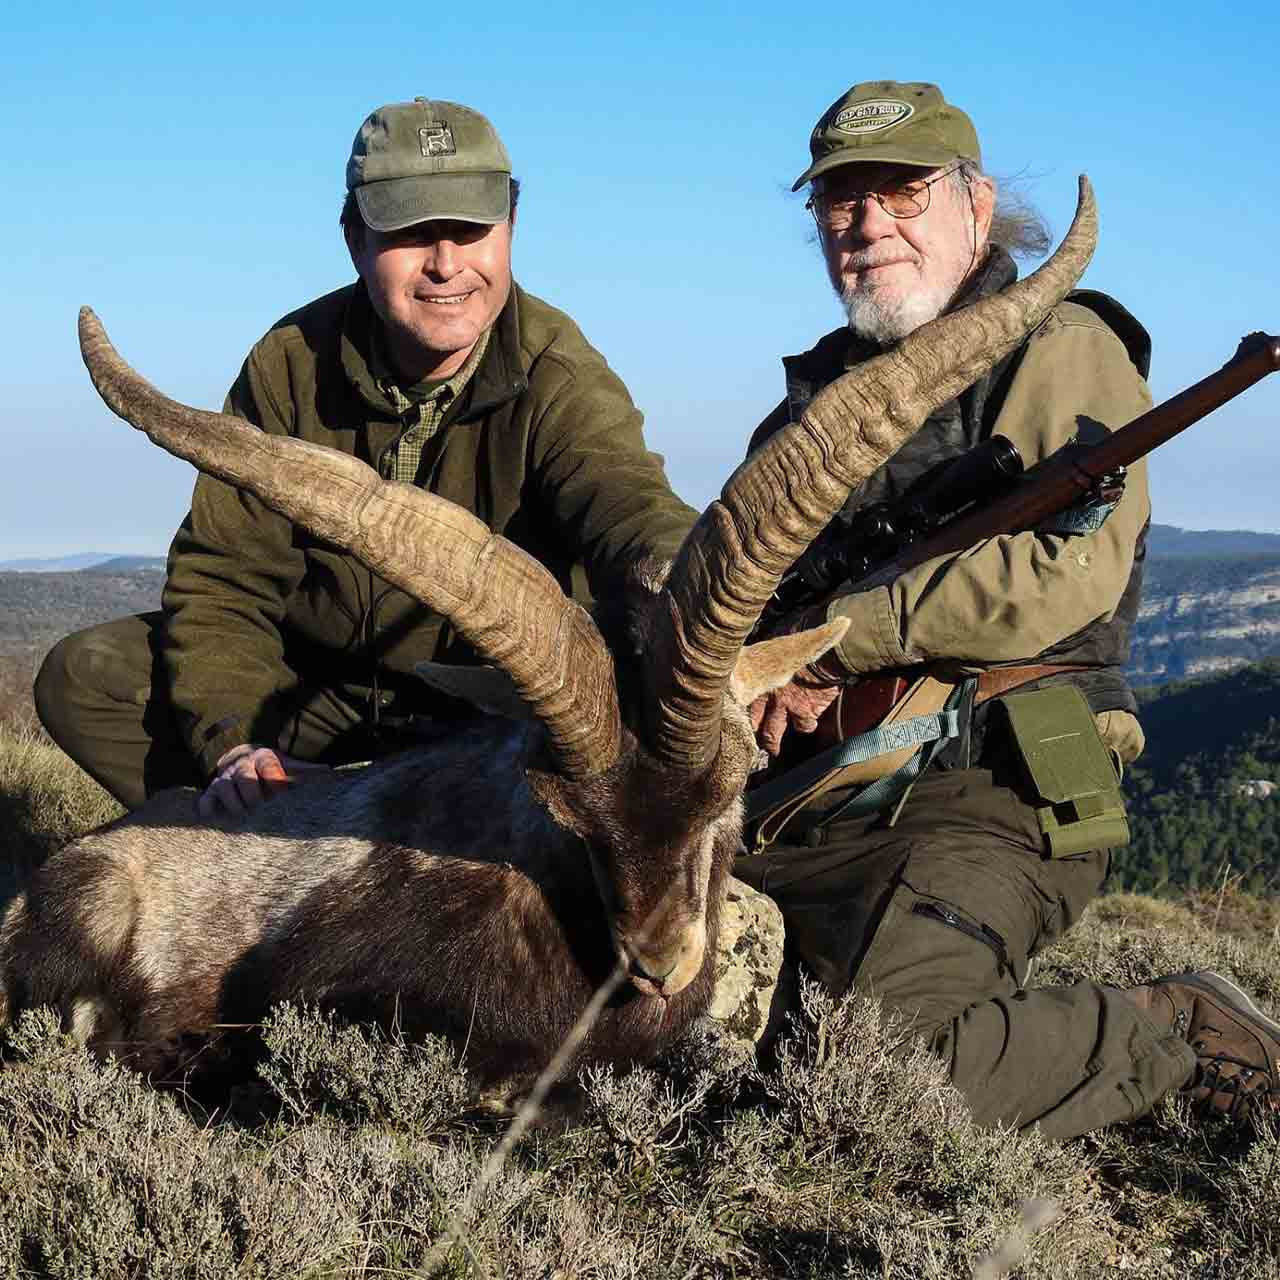 Beceite Ibex hunts in Spain